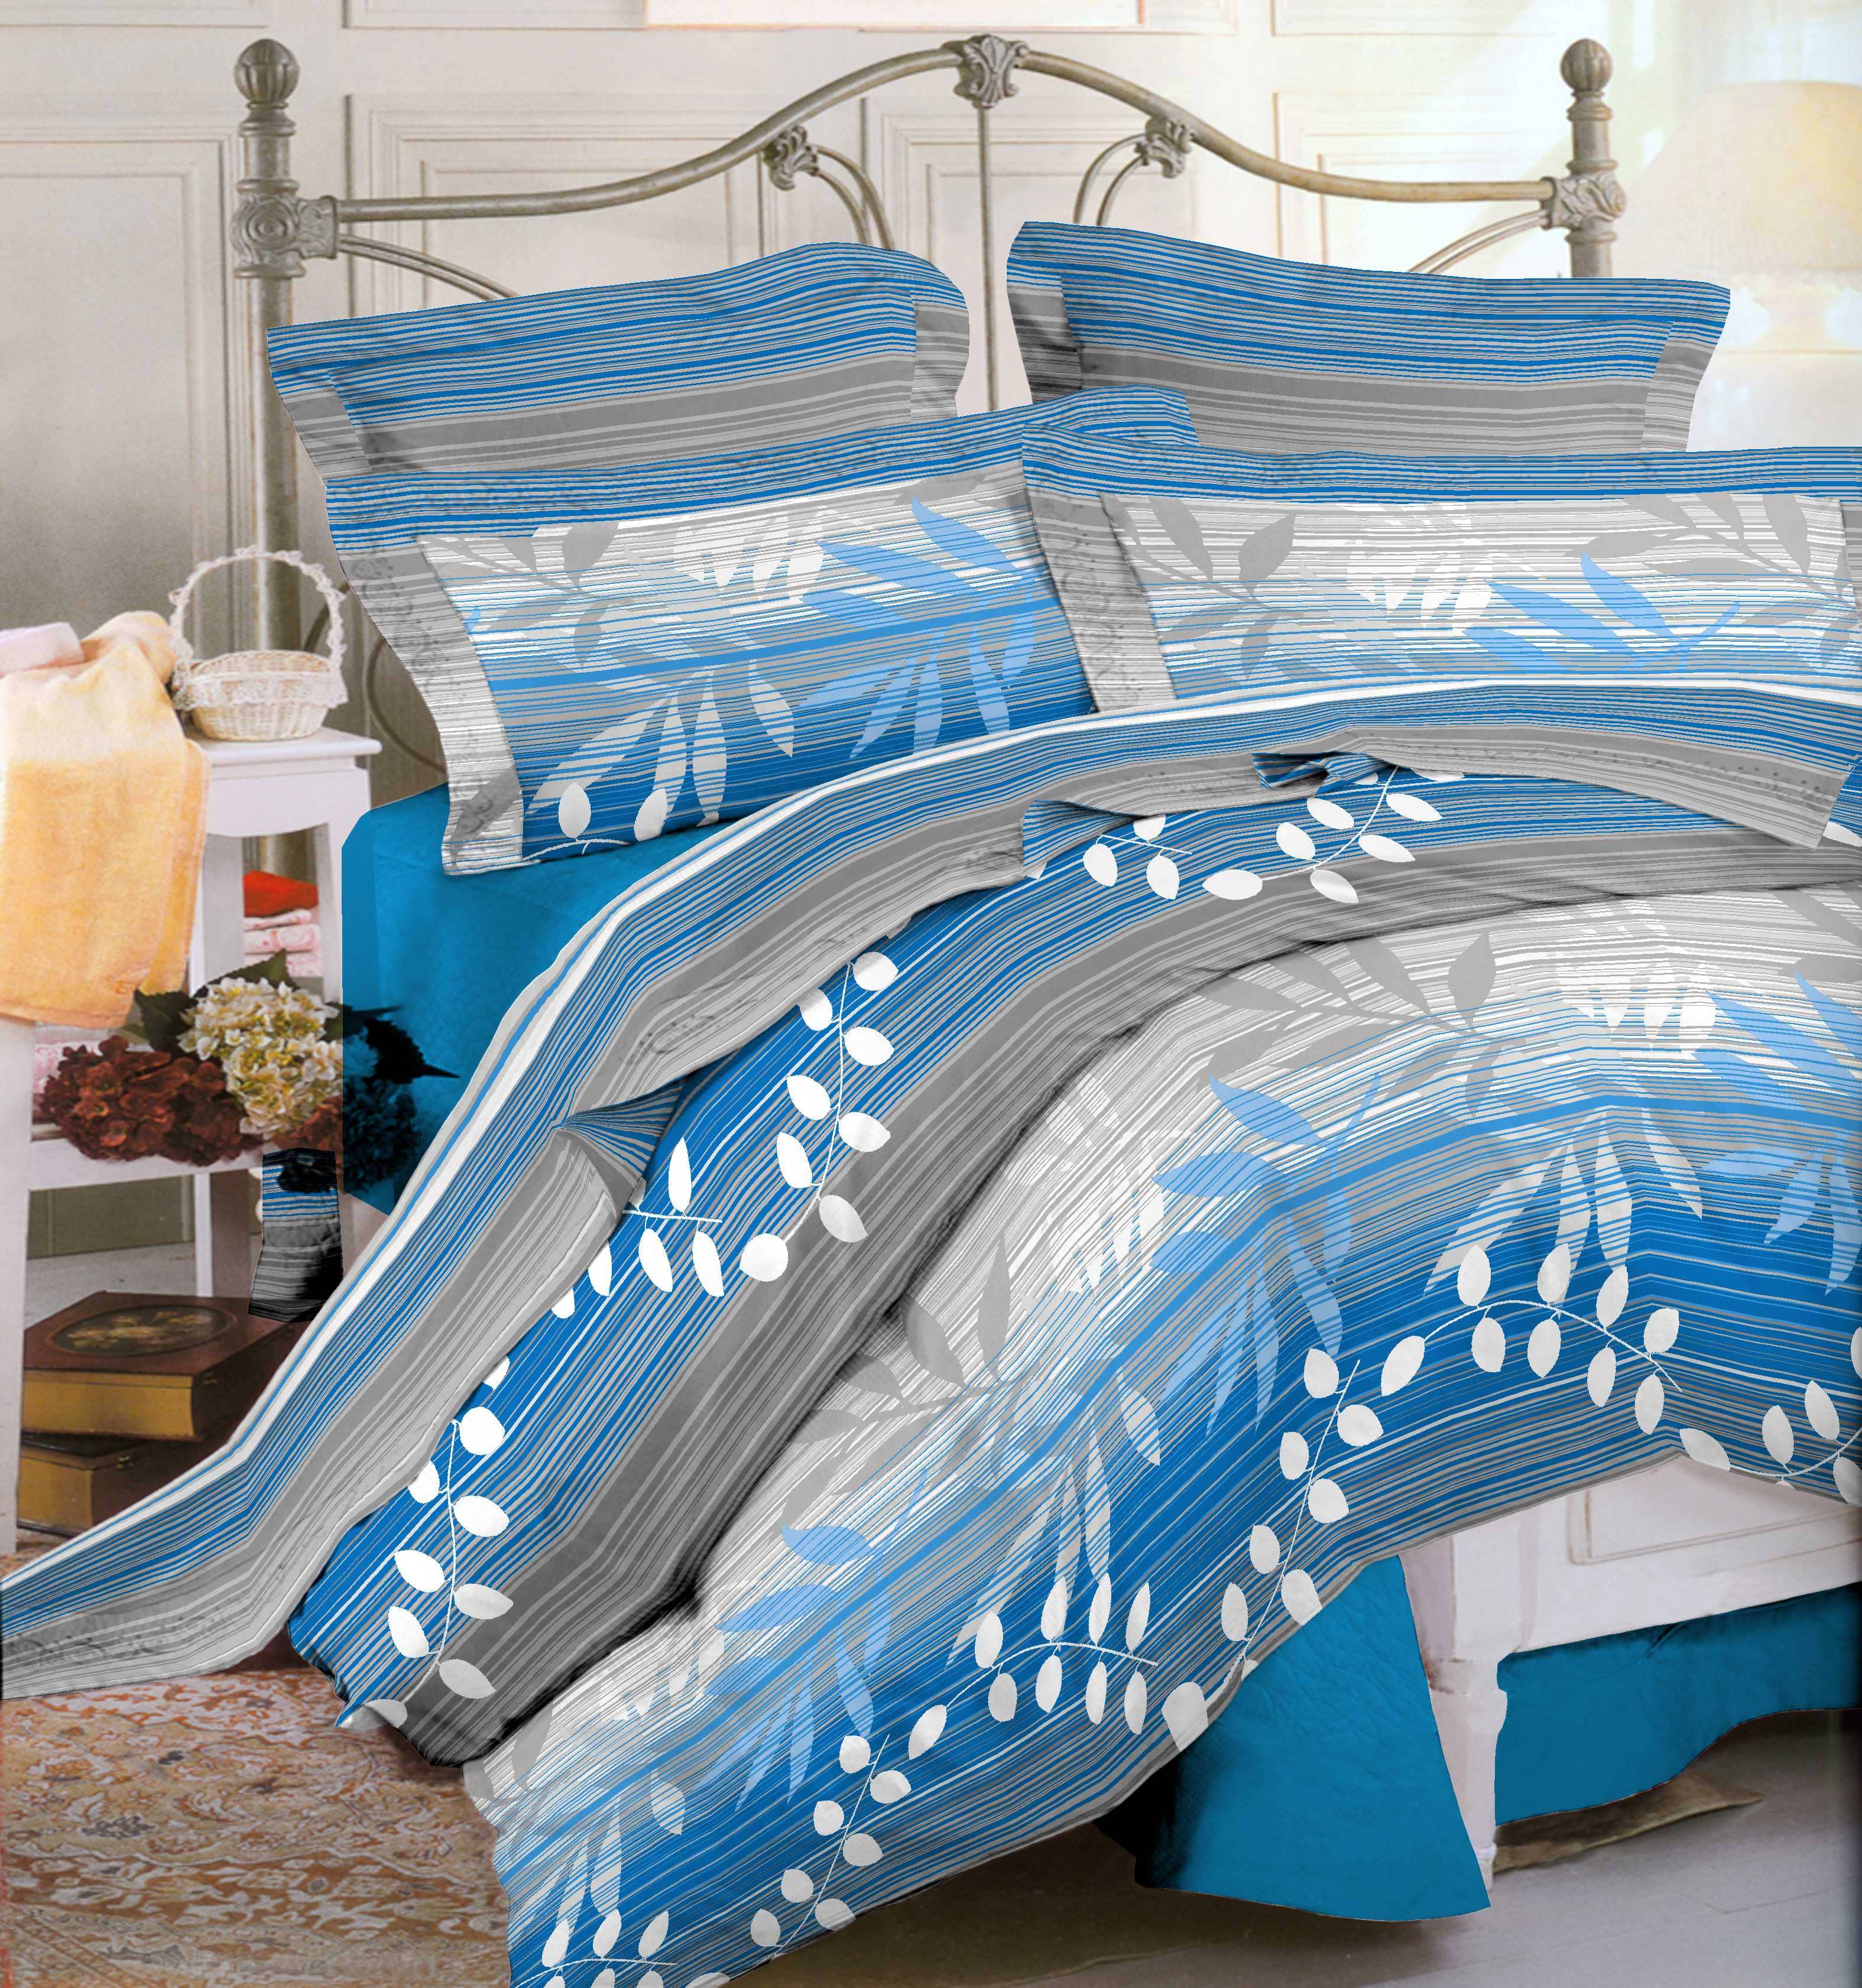 סט מצעים למיטה וחצי 100% כותנה 200*120 דגם נועה צבע כחול מבית תודן